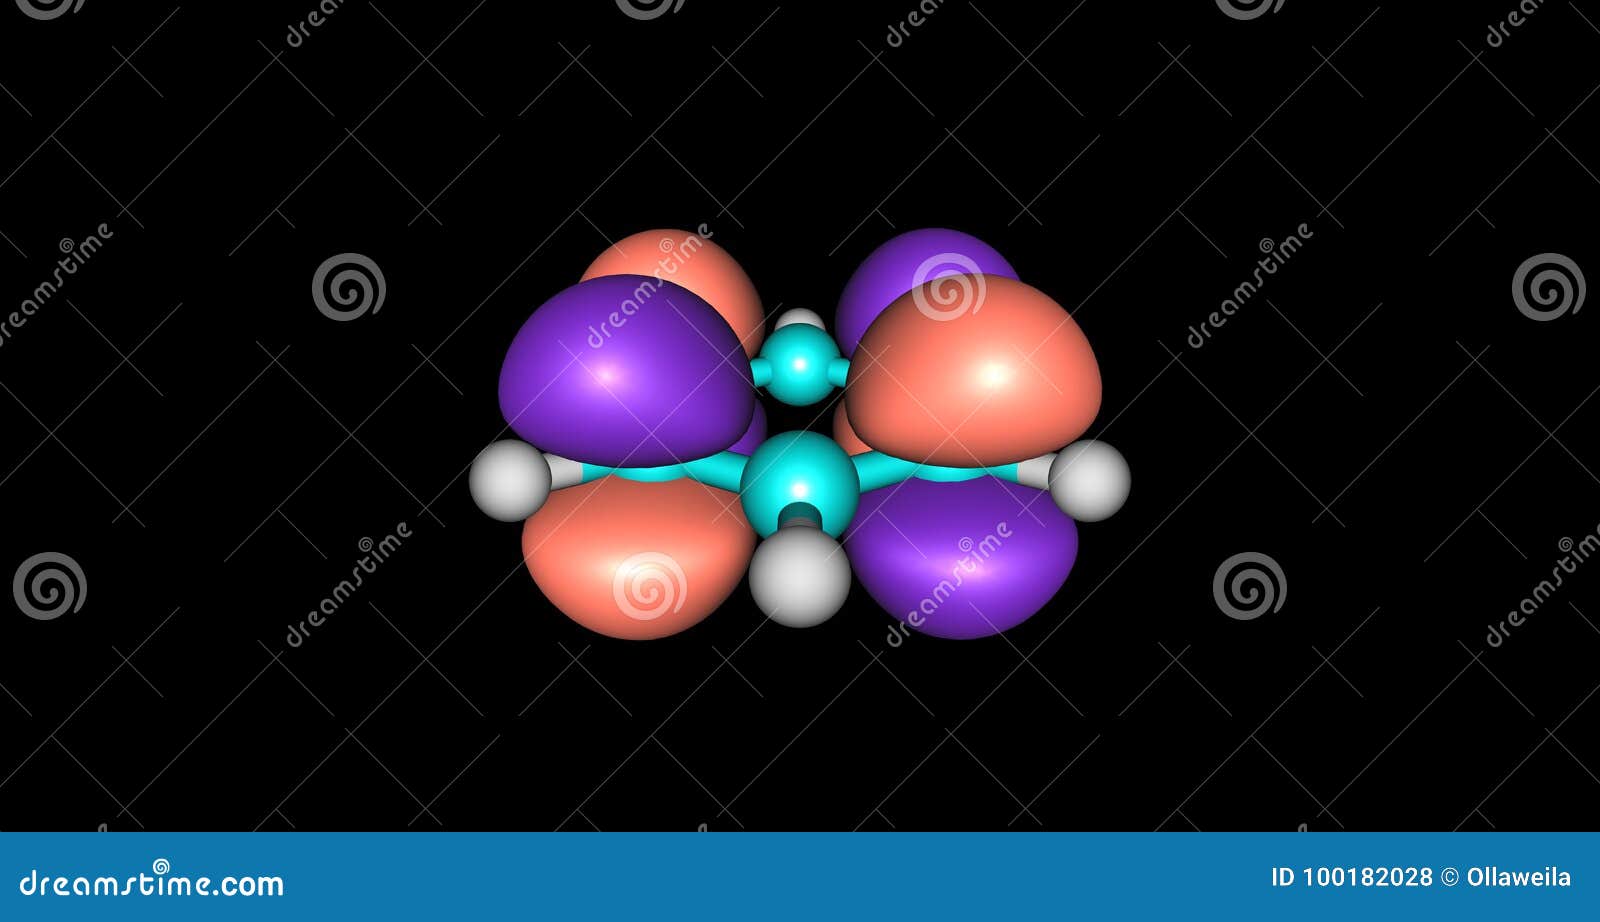 conjunto do 3d realista átomo com orbital elétrons isolado em